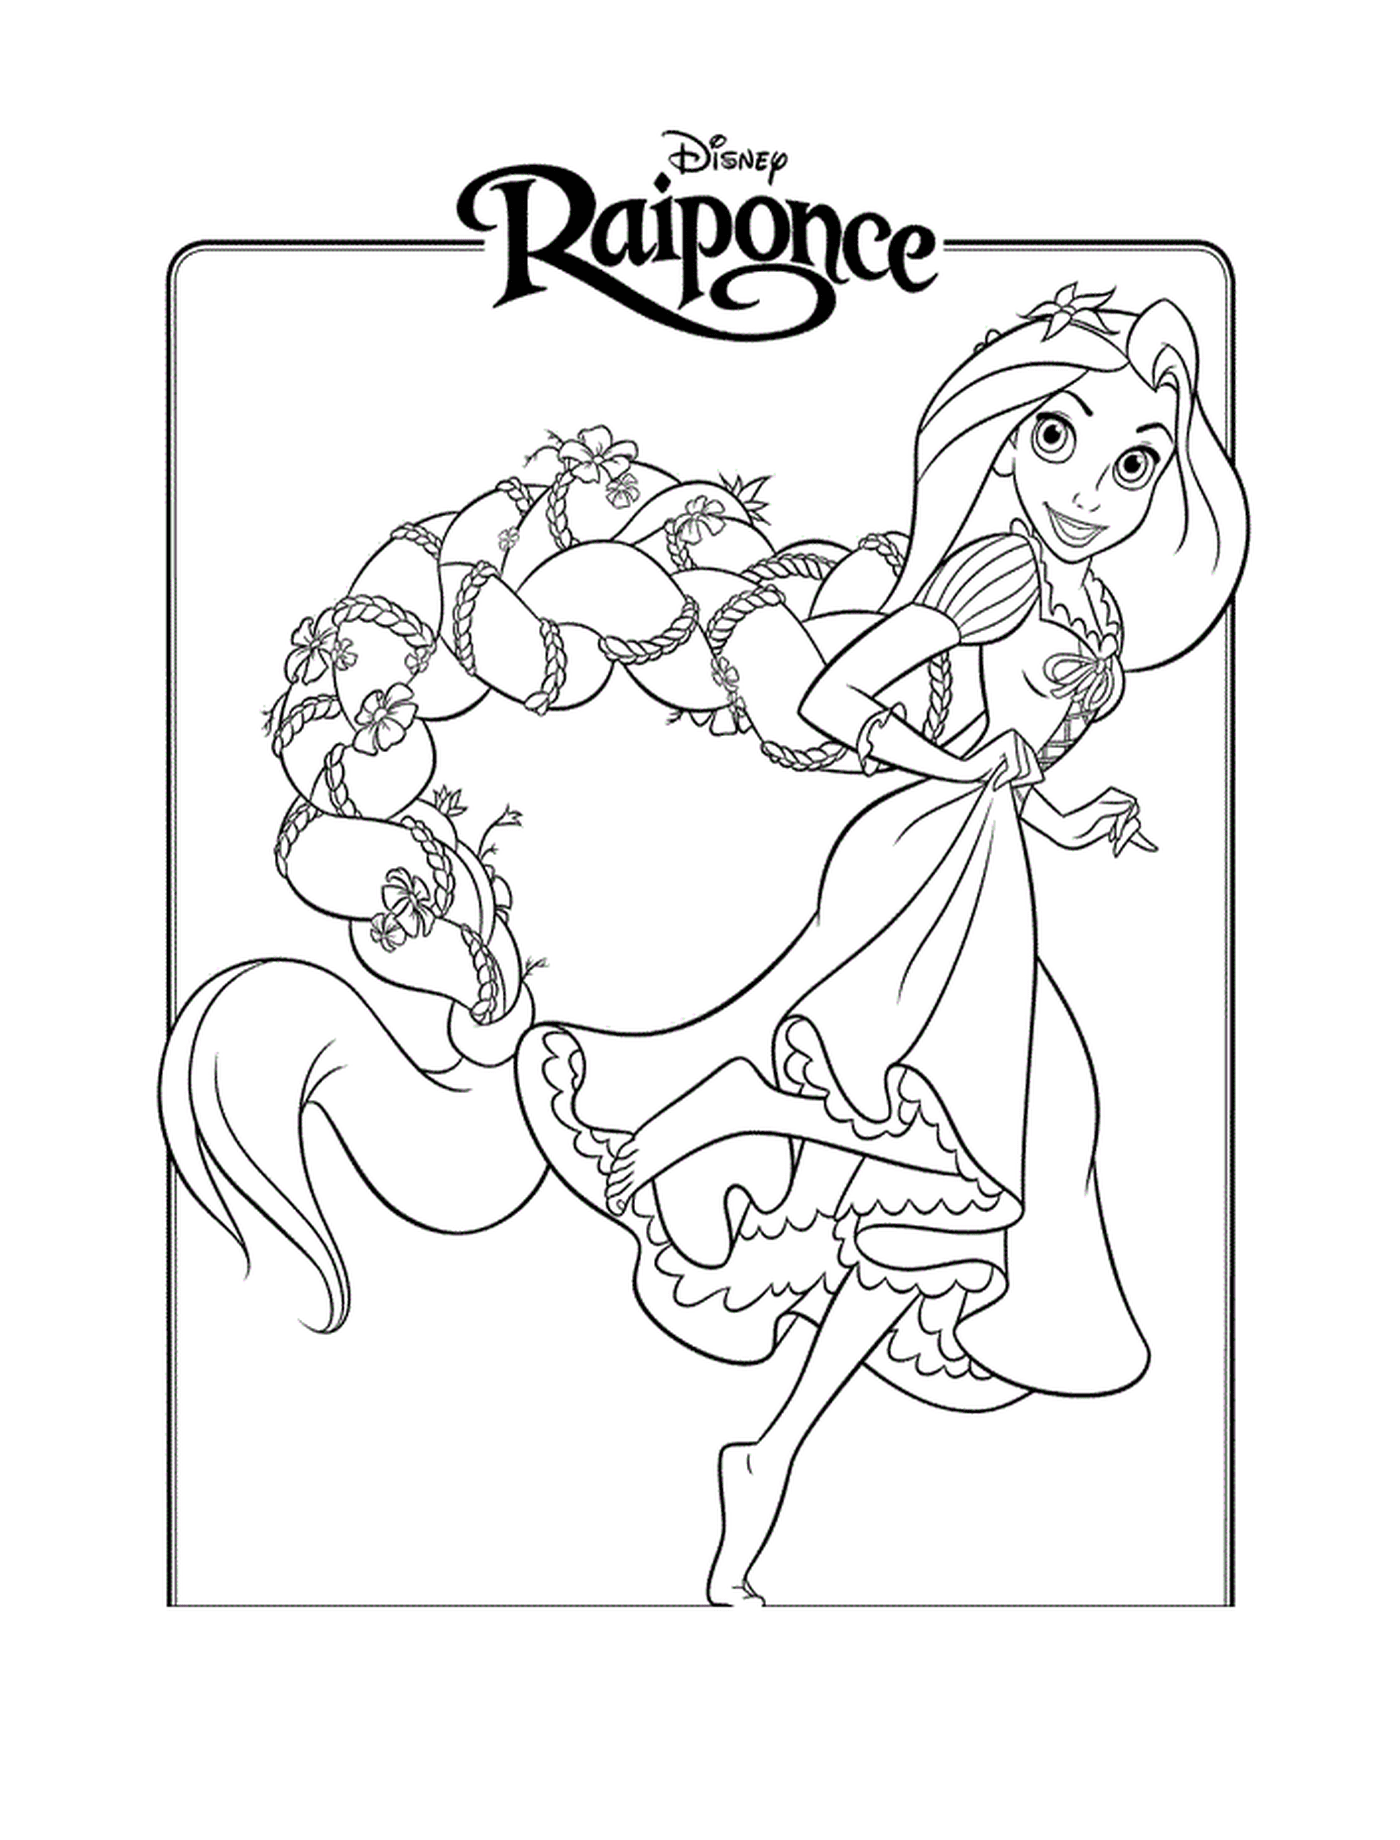  Prinzessin Raiponce, von schillernder Schönheit 